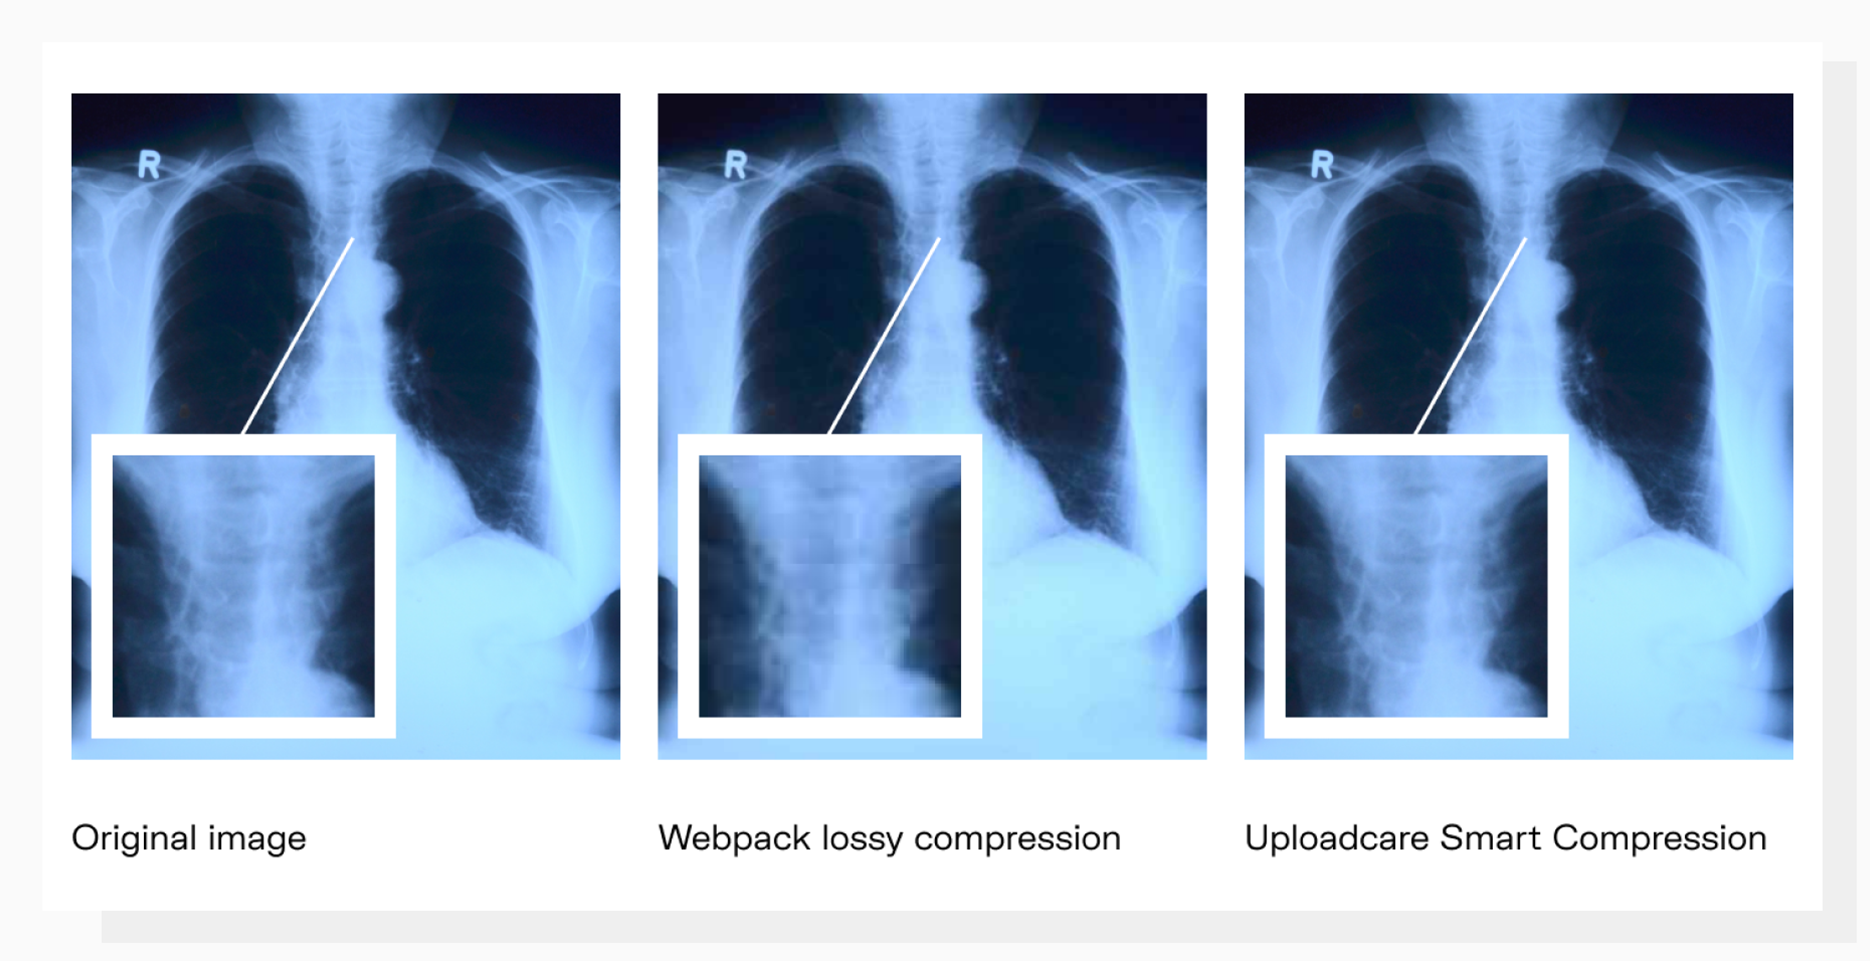 Webpack image compression vs Uploadcare compression